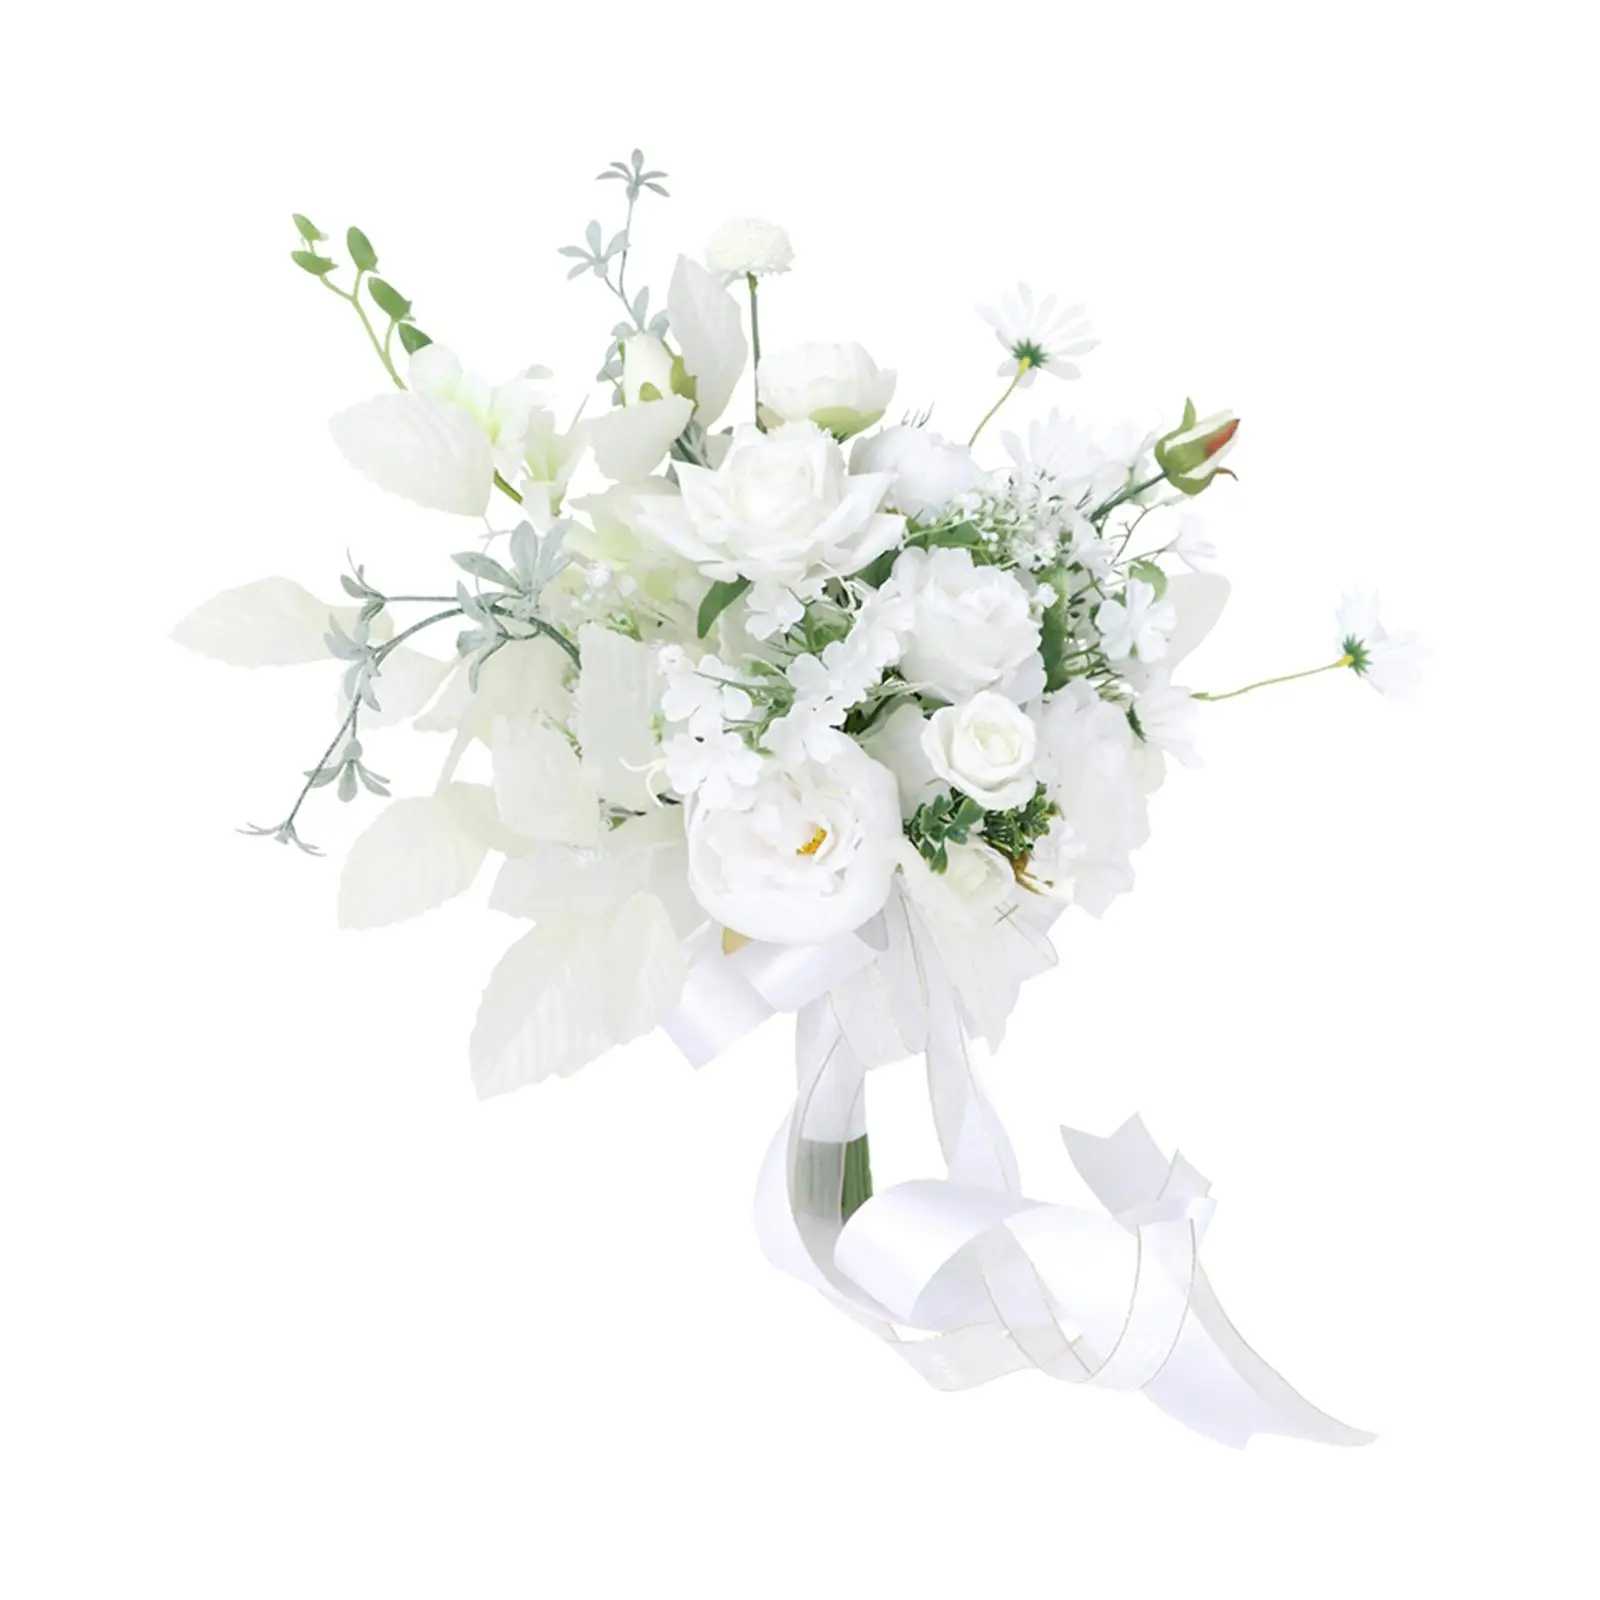 Как составить идеальный букет невесты? - Читайте рекомендации от флористов!